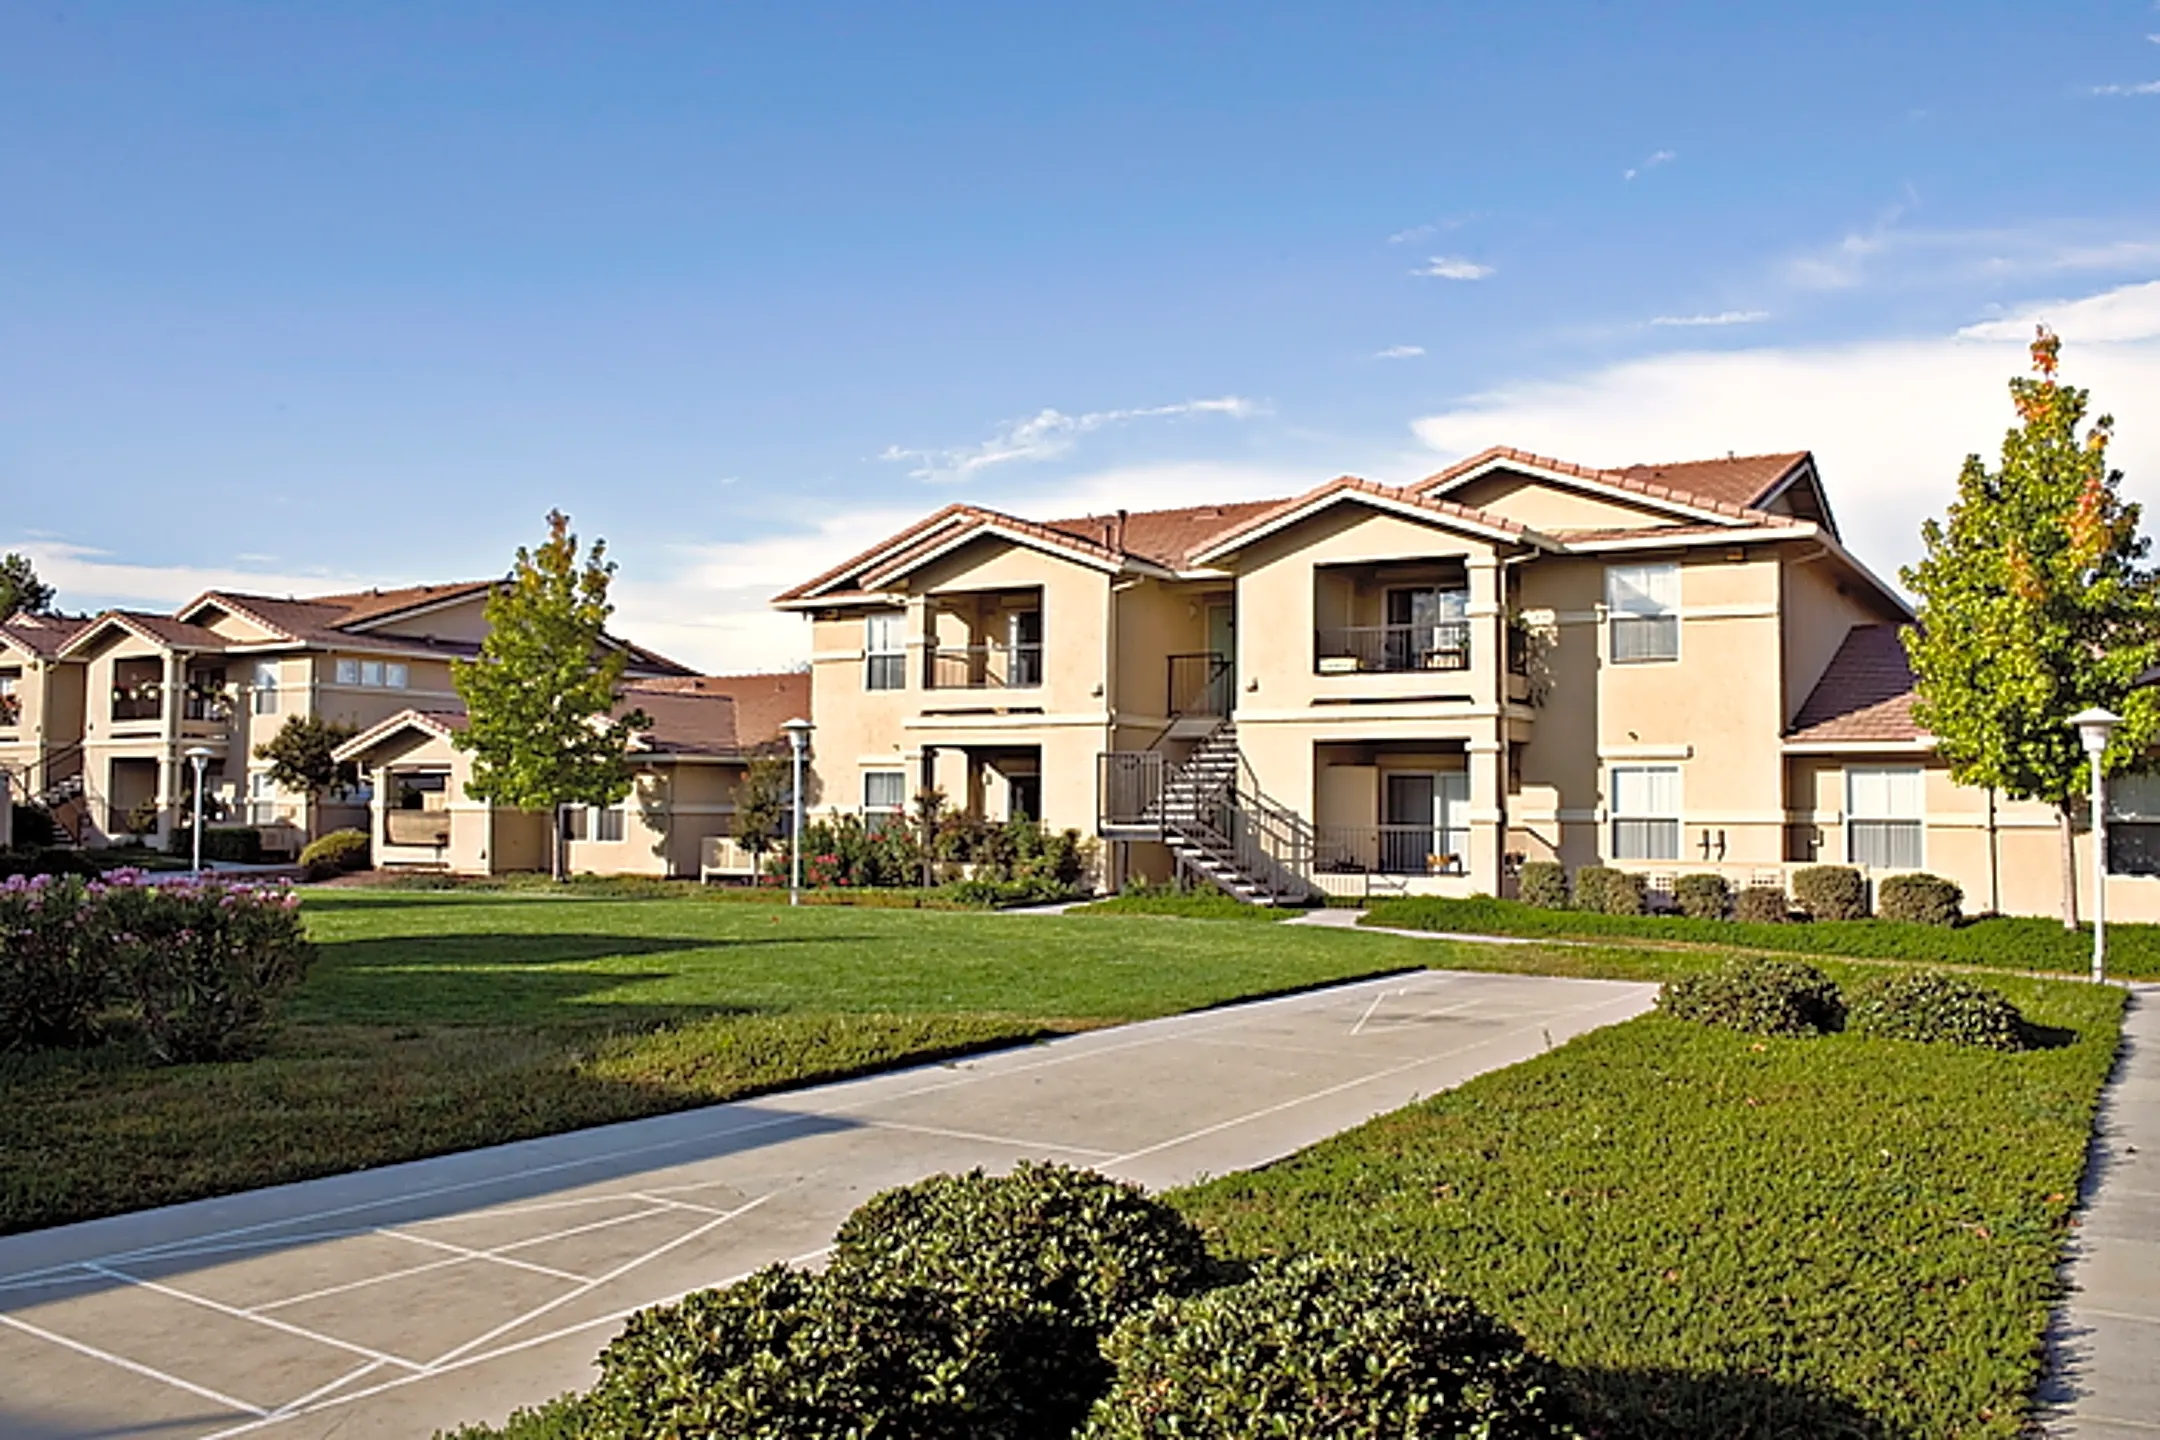 Saratoga Senior Apartments - Vacaville, CA